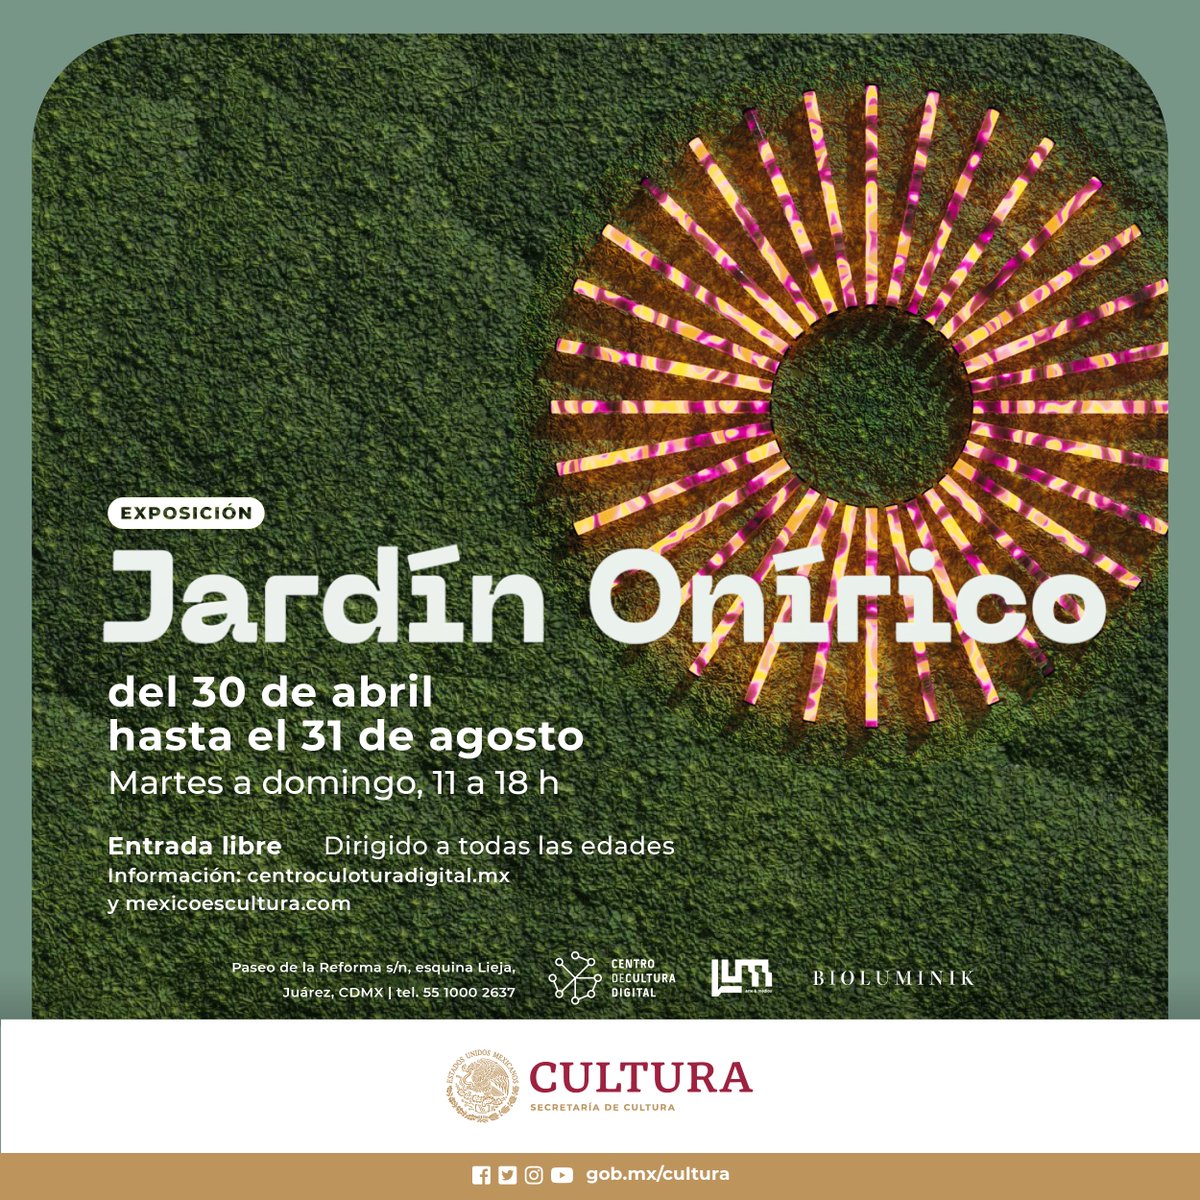 El CCD invita a la exposición “Jardín Onírico” revistabocetos.com/el-ccd-invita-… @alefrausto @CCDmx @cultura_mx